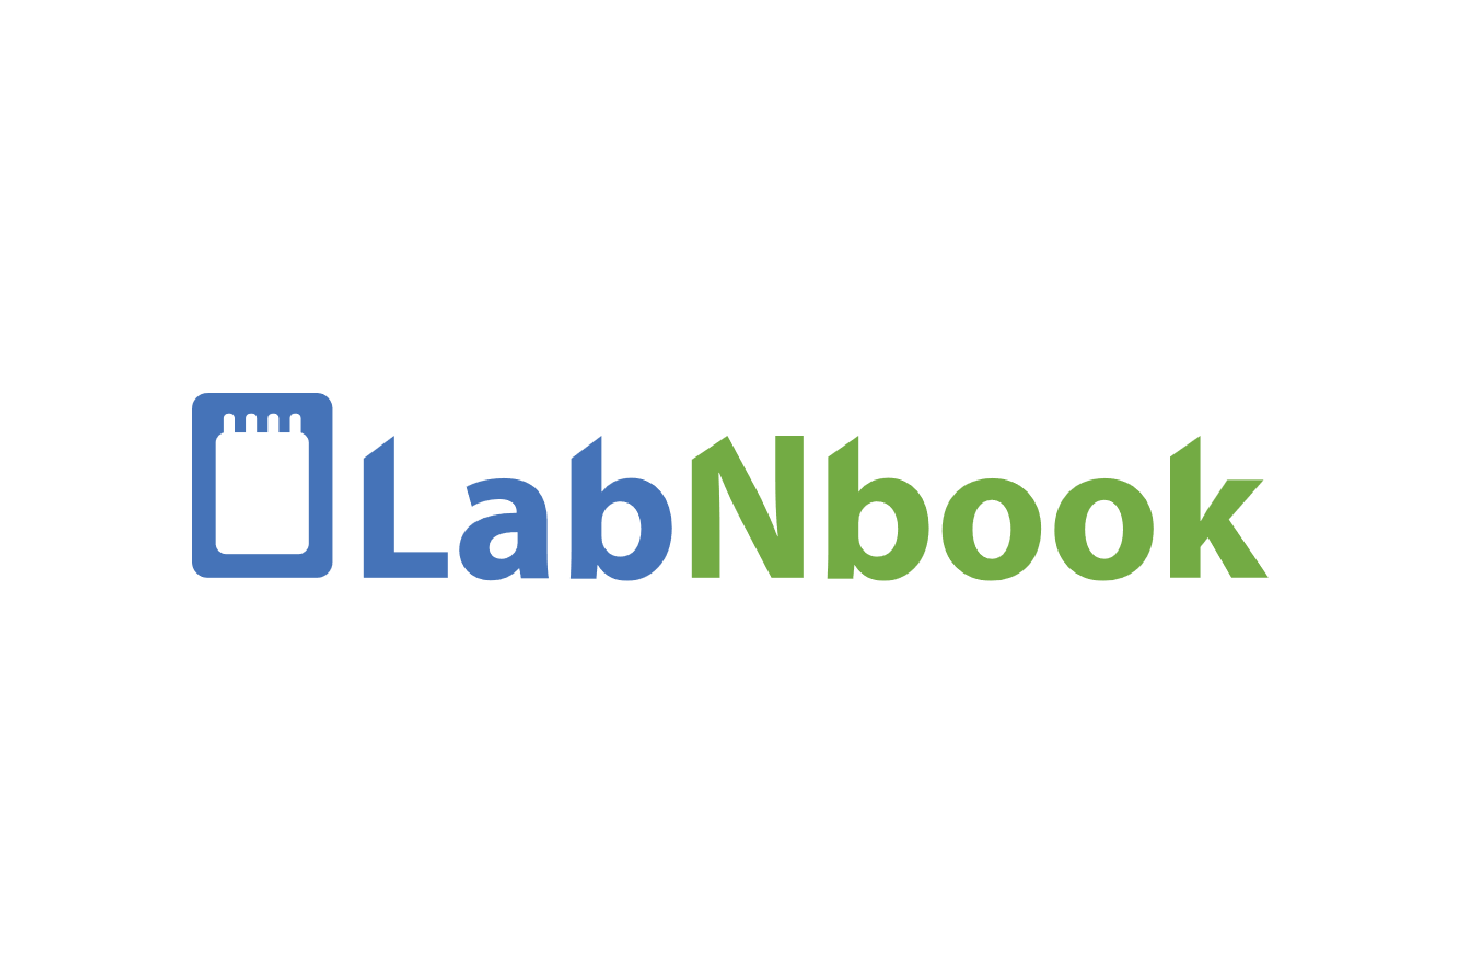 Labnbook